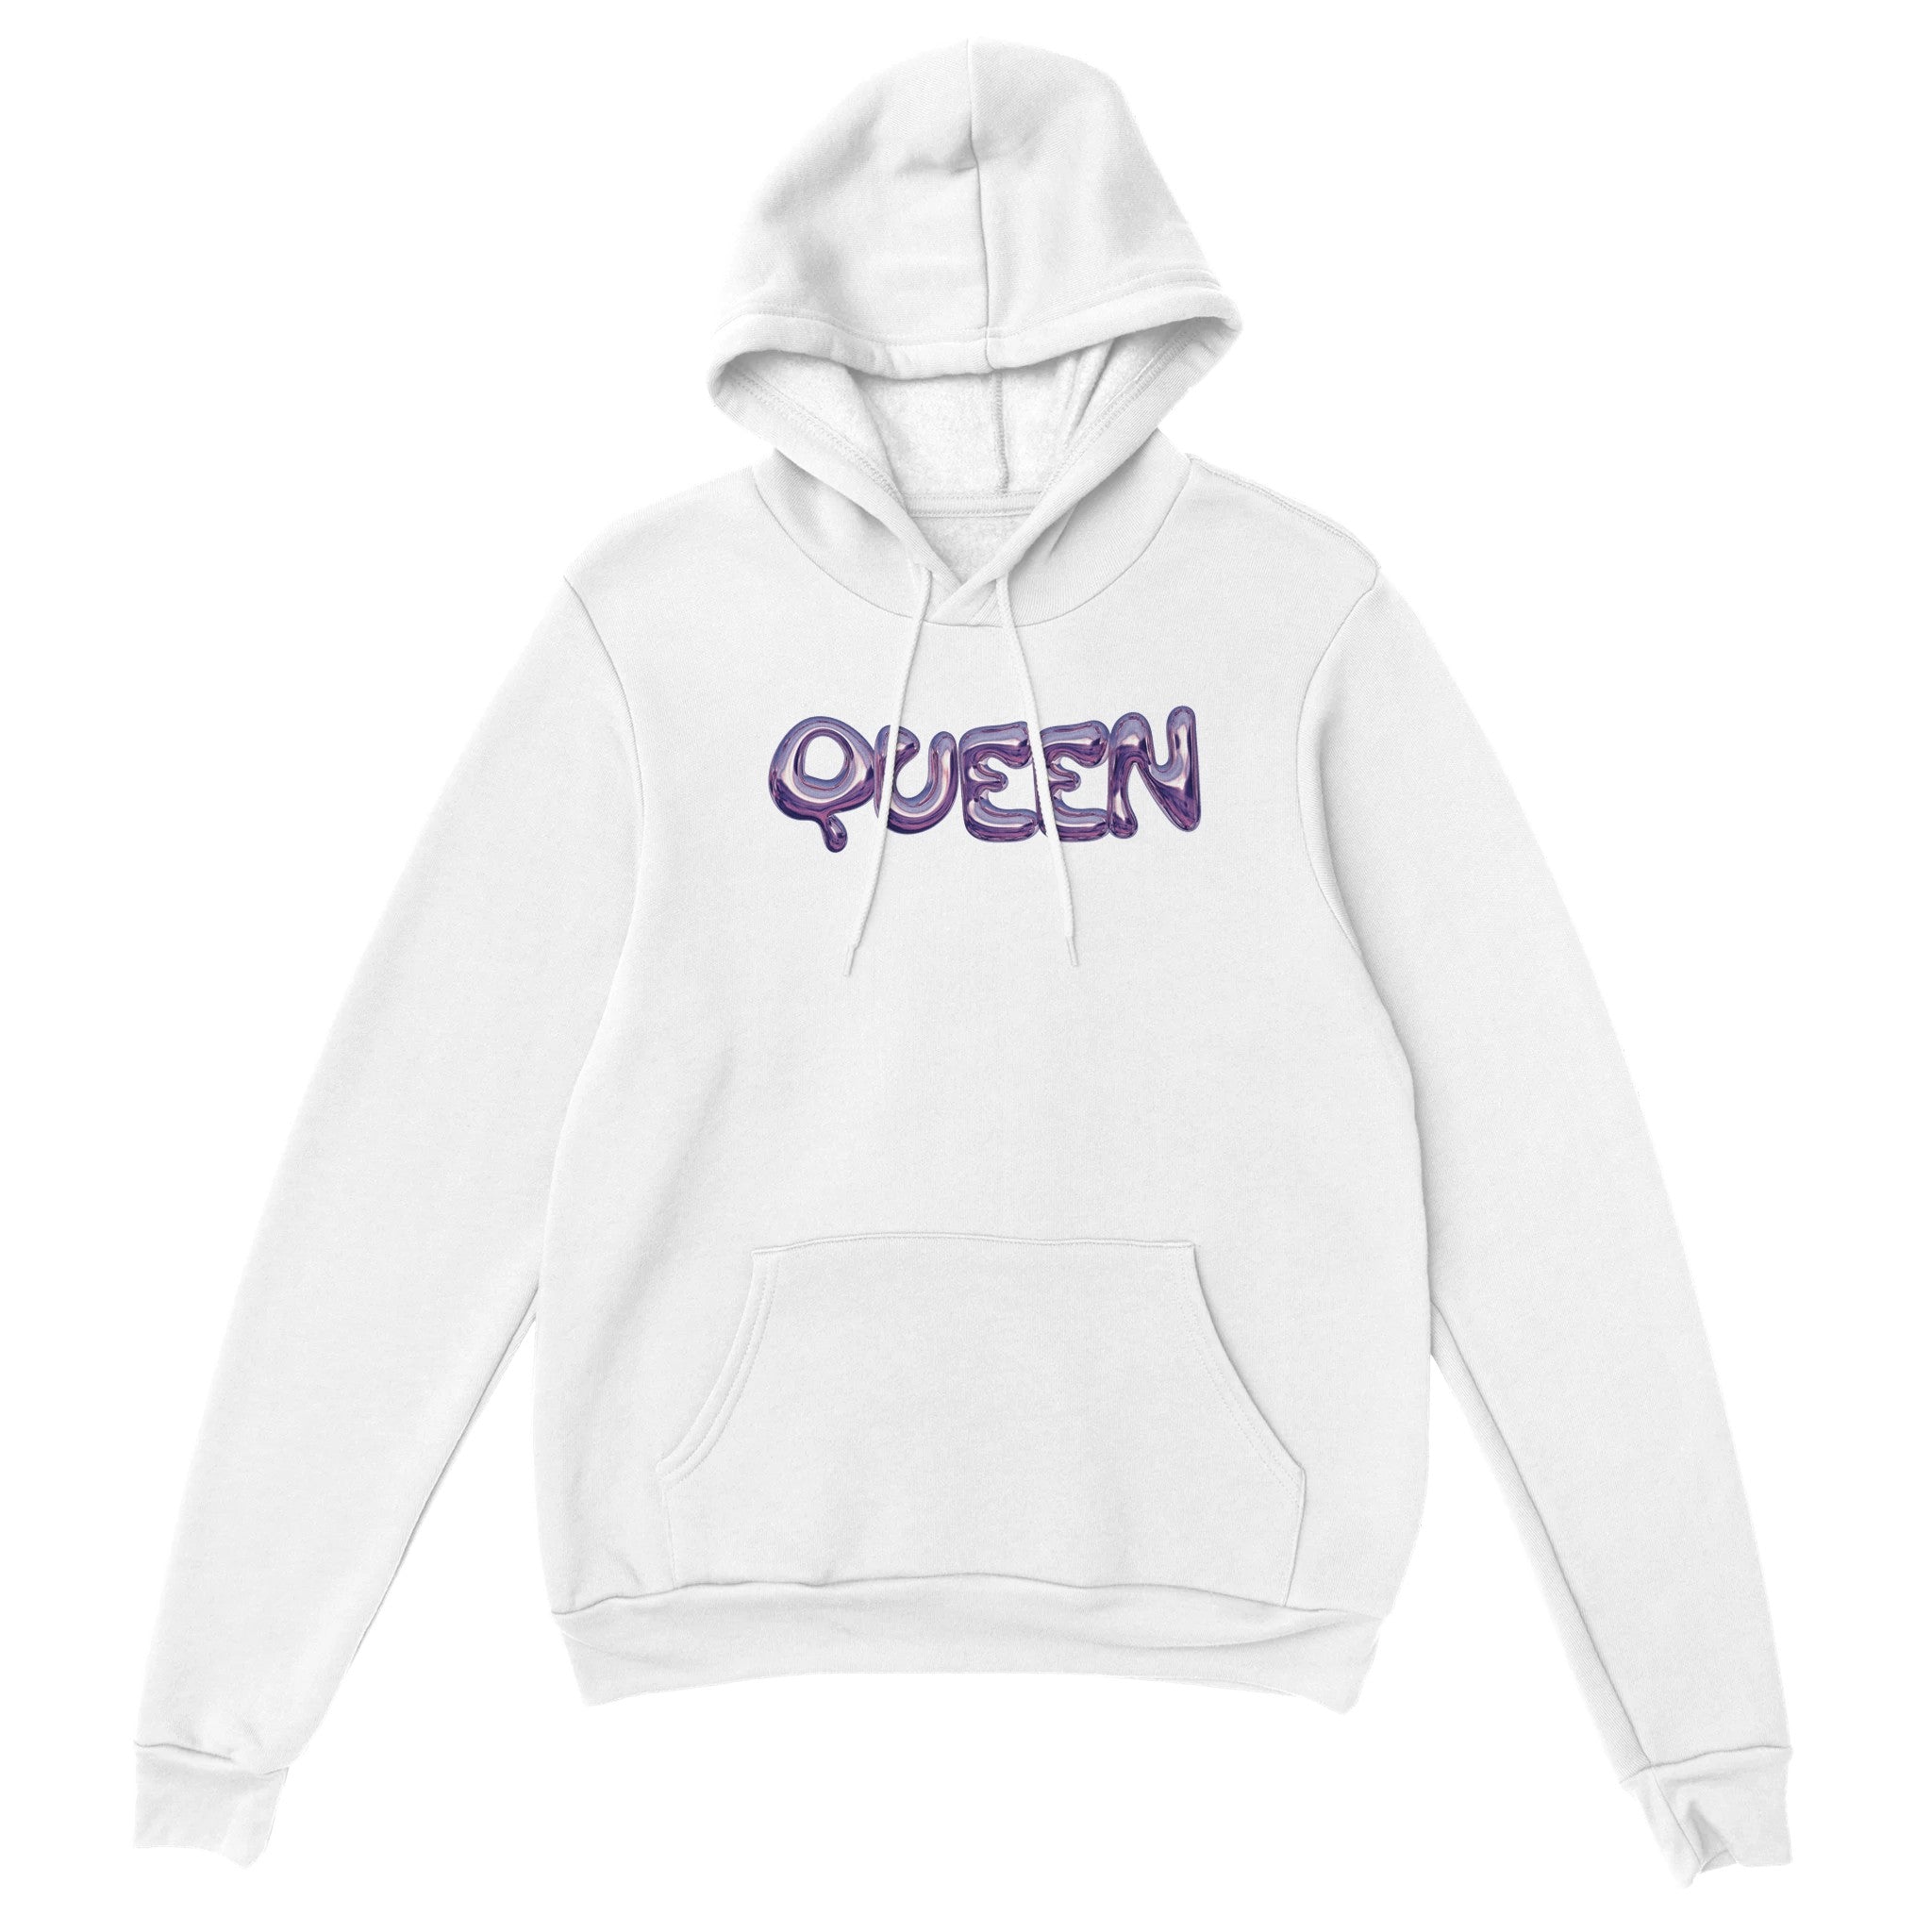 'Queen' hoodie - In Print We Trust